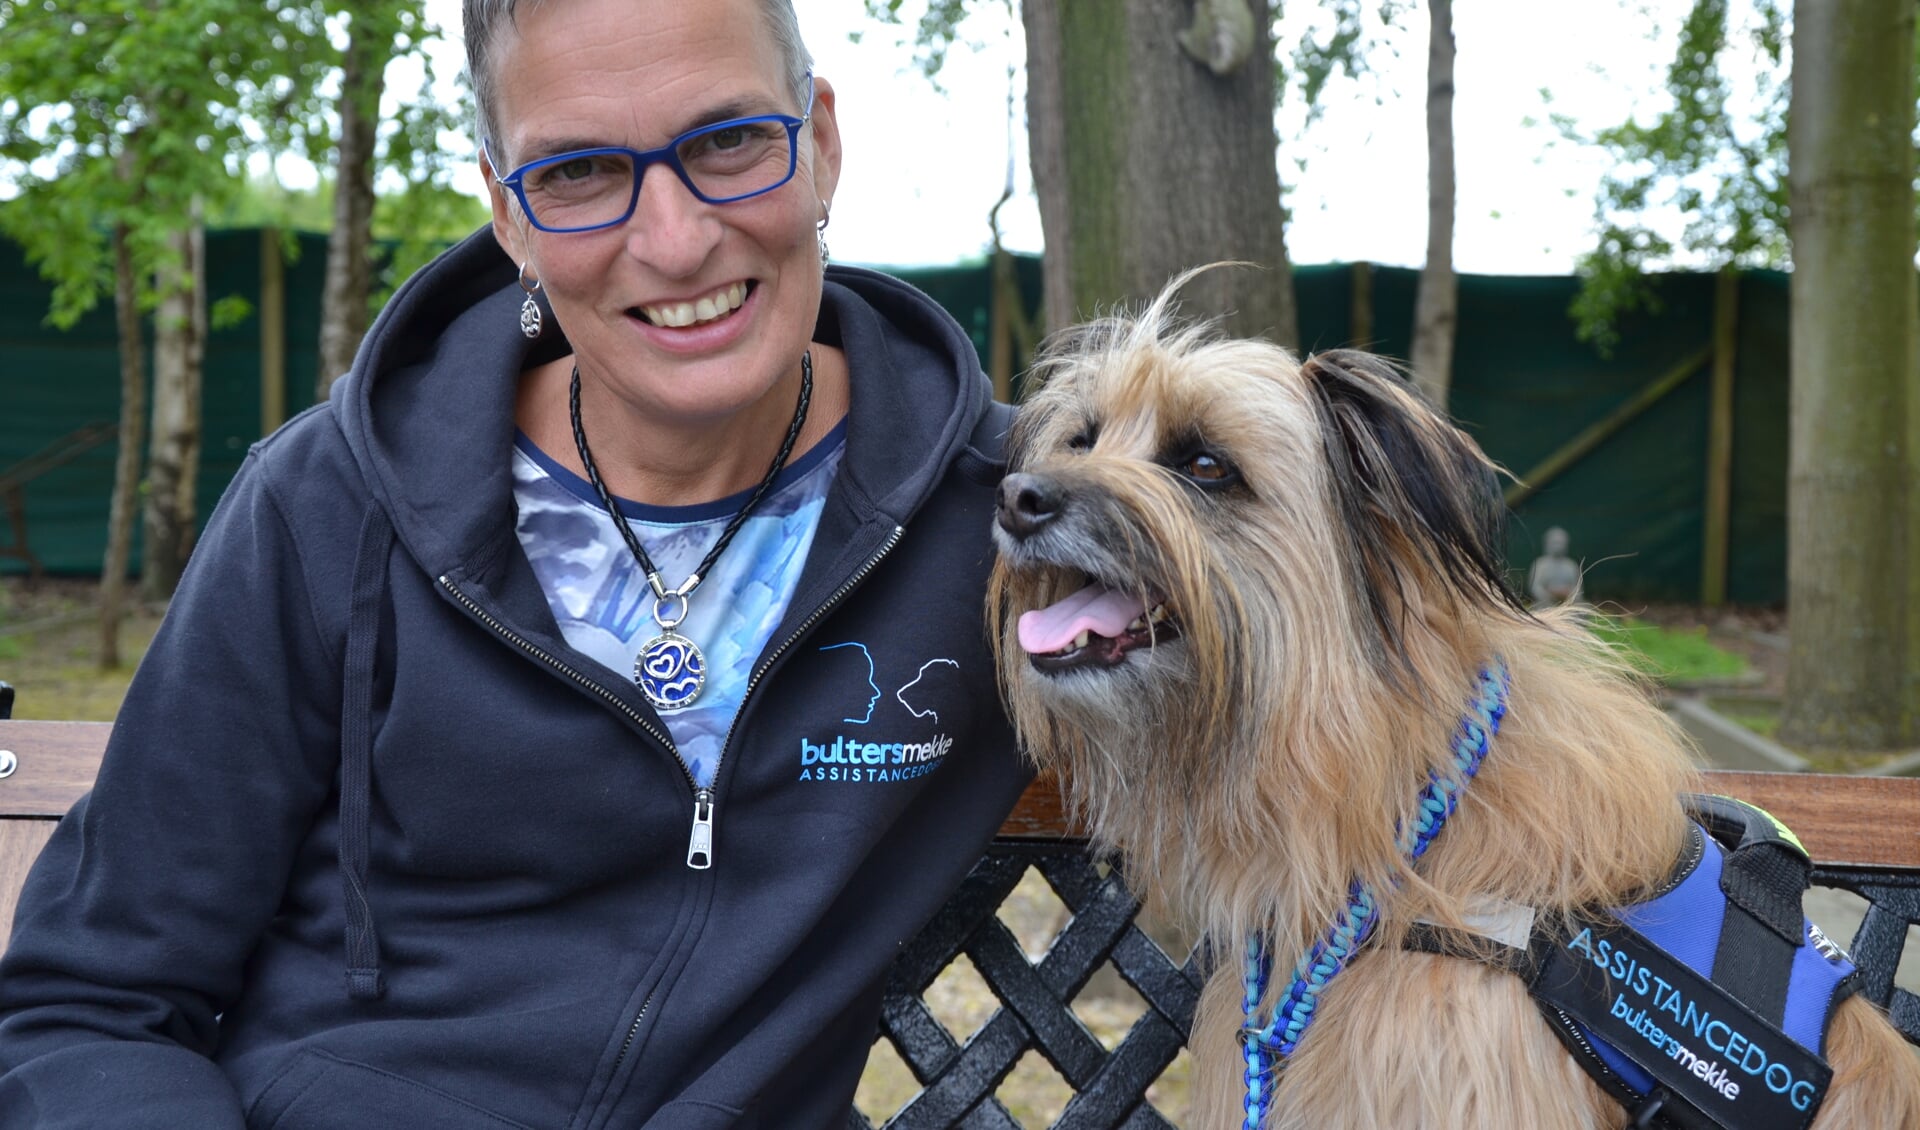 Helma Verhoeven en haar 'assistentiehond' Banios. (foto: IrisManon Verhoeven)